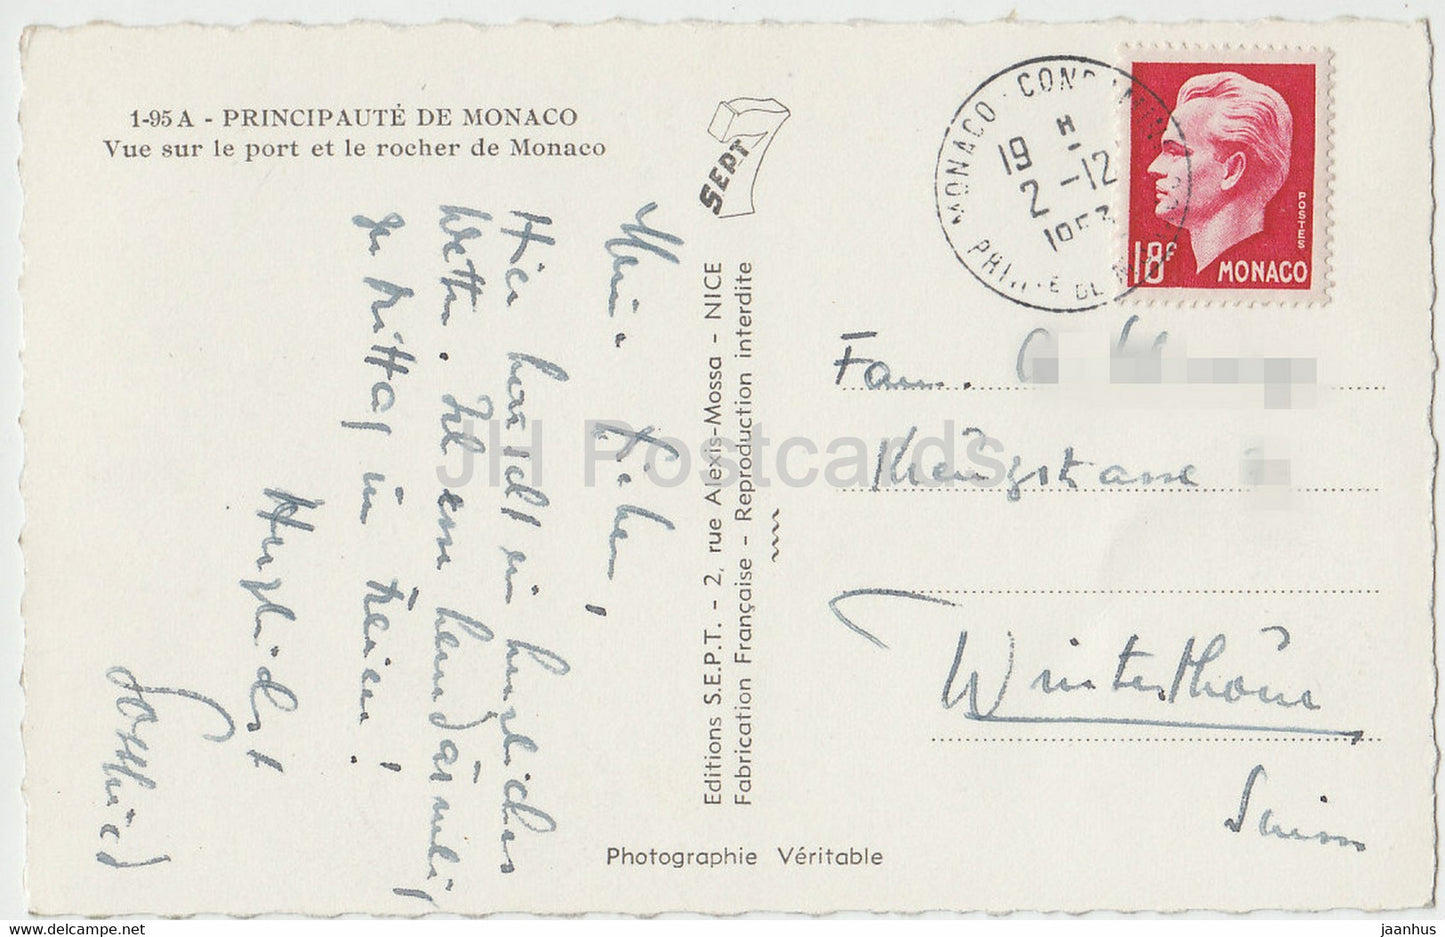 Vue sur le port et le rocher de Monaco – alte Postkarte – 1953 – Monaco – gebraucht